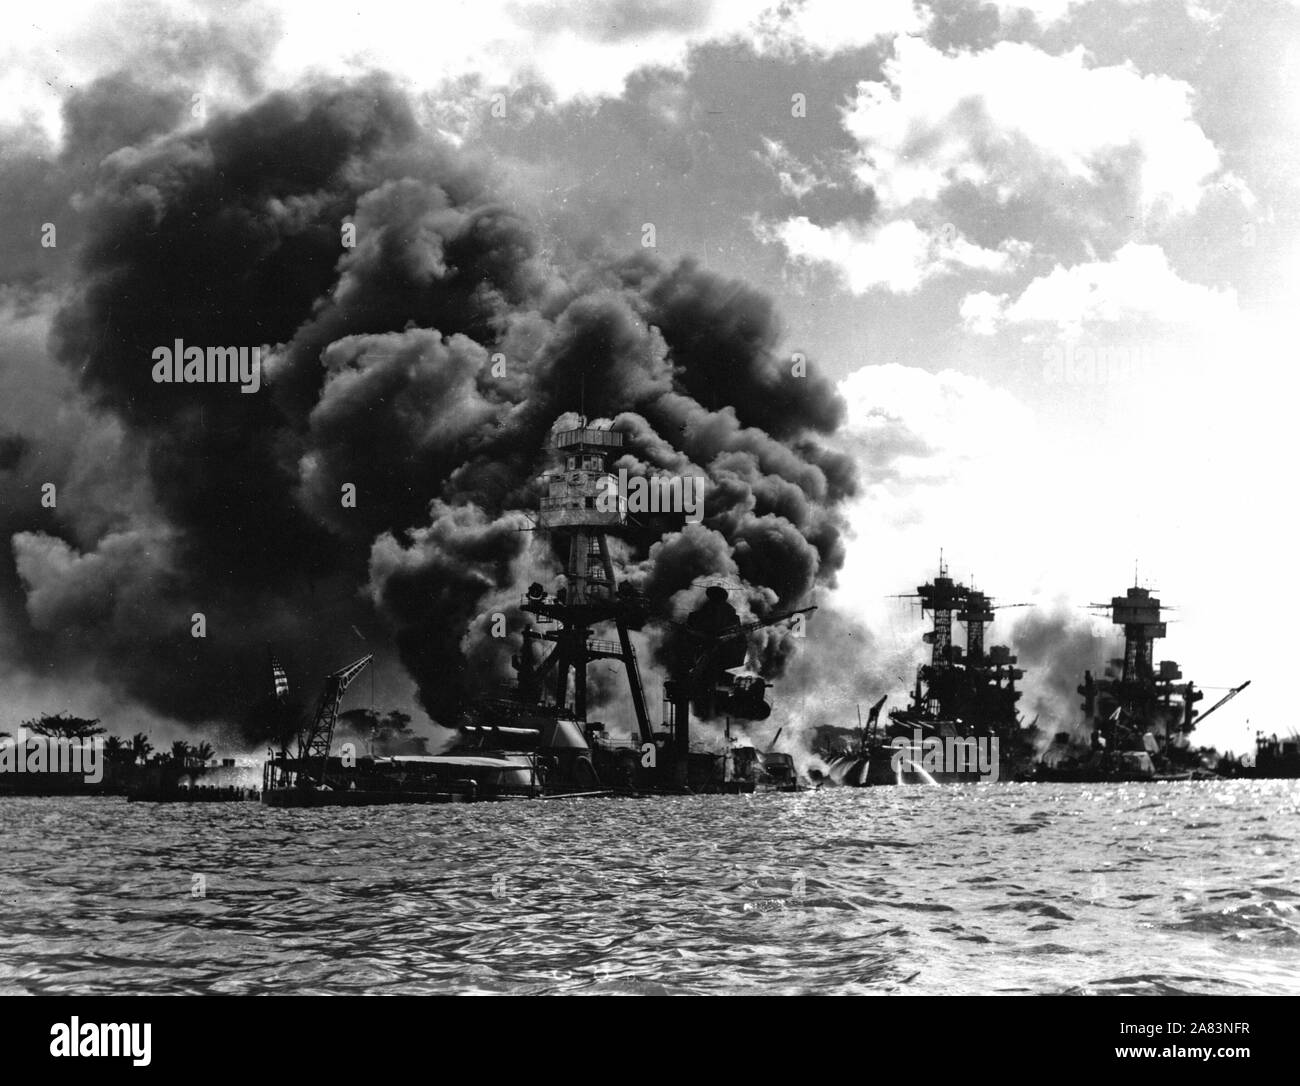 Burning and damaged ships at Pearl Harbor, Dec. 7 1941 Stock Photo